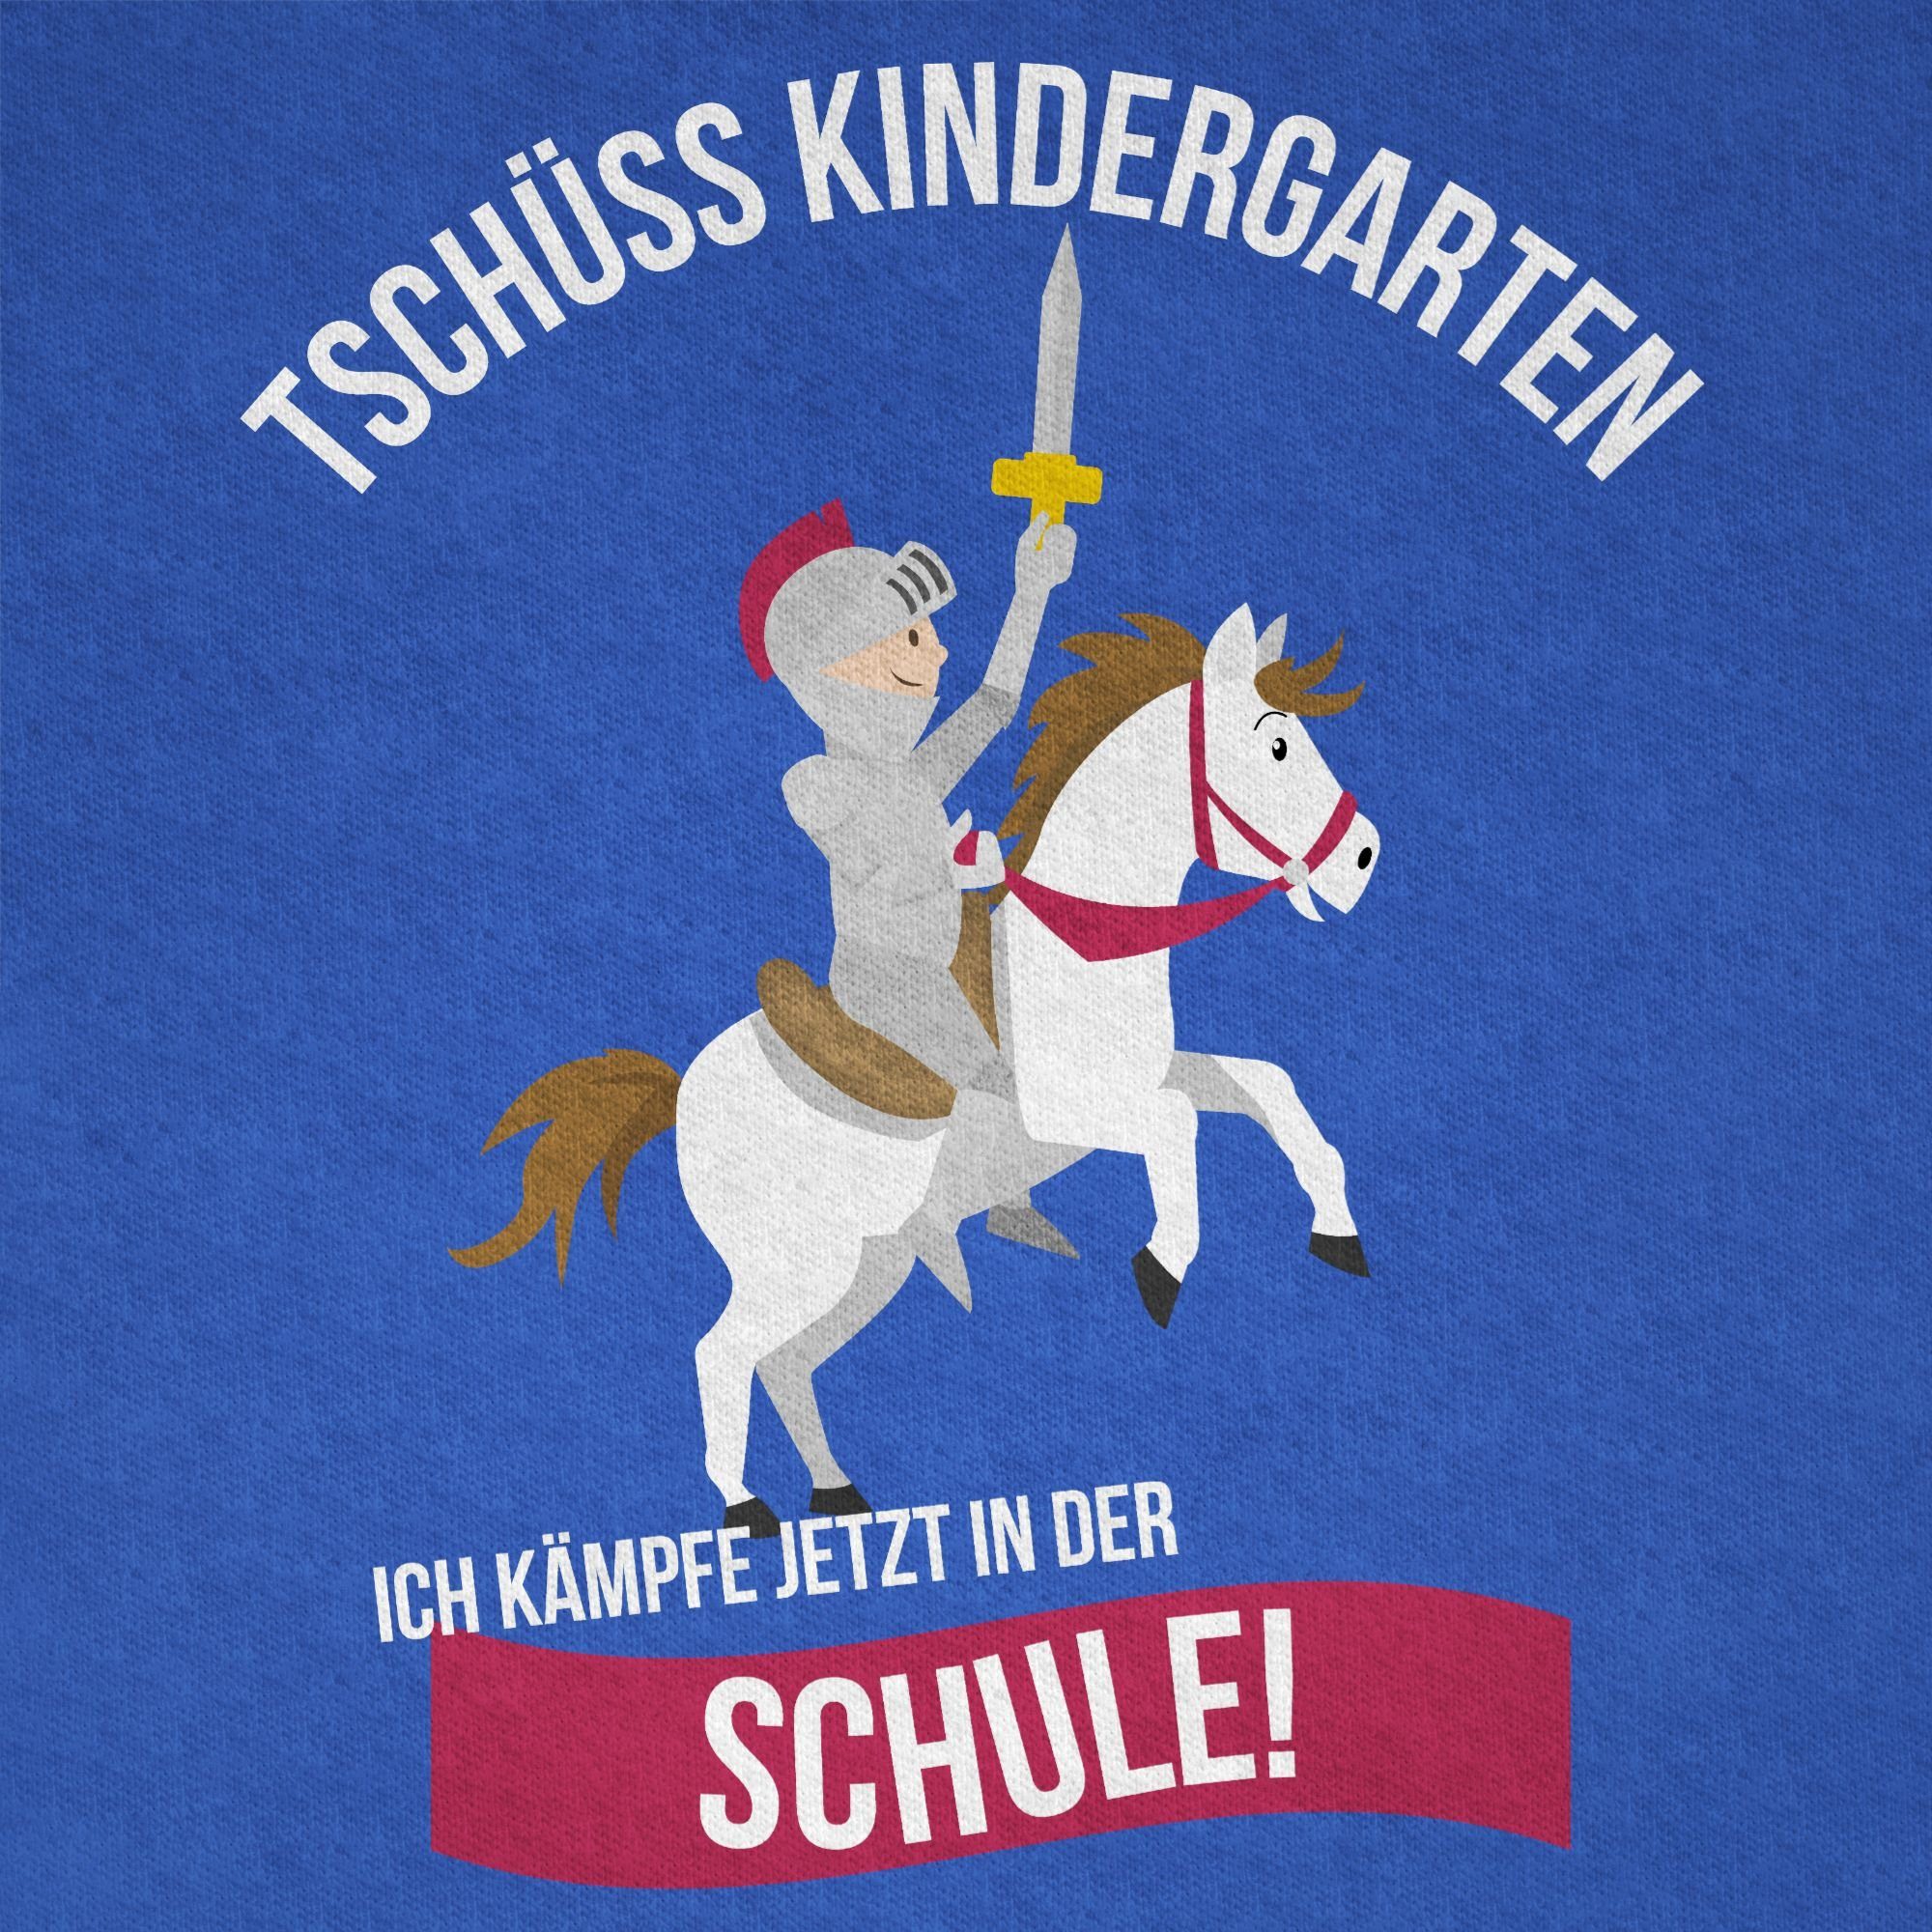 Shirtracer T-Shirt Tschüss Einschulung Schule Schulanfang Geschenke 2 Junge Royalblau Kindergarten Ritter